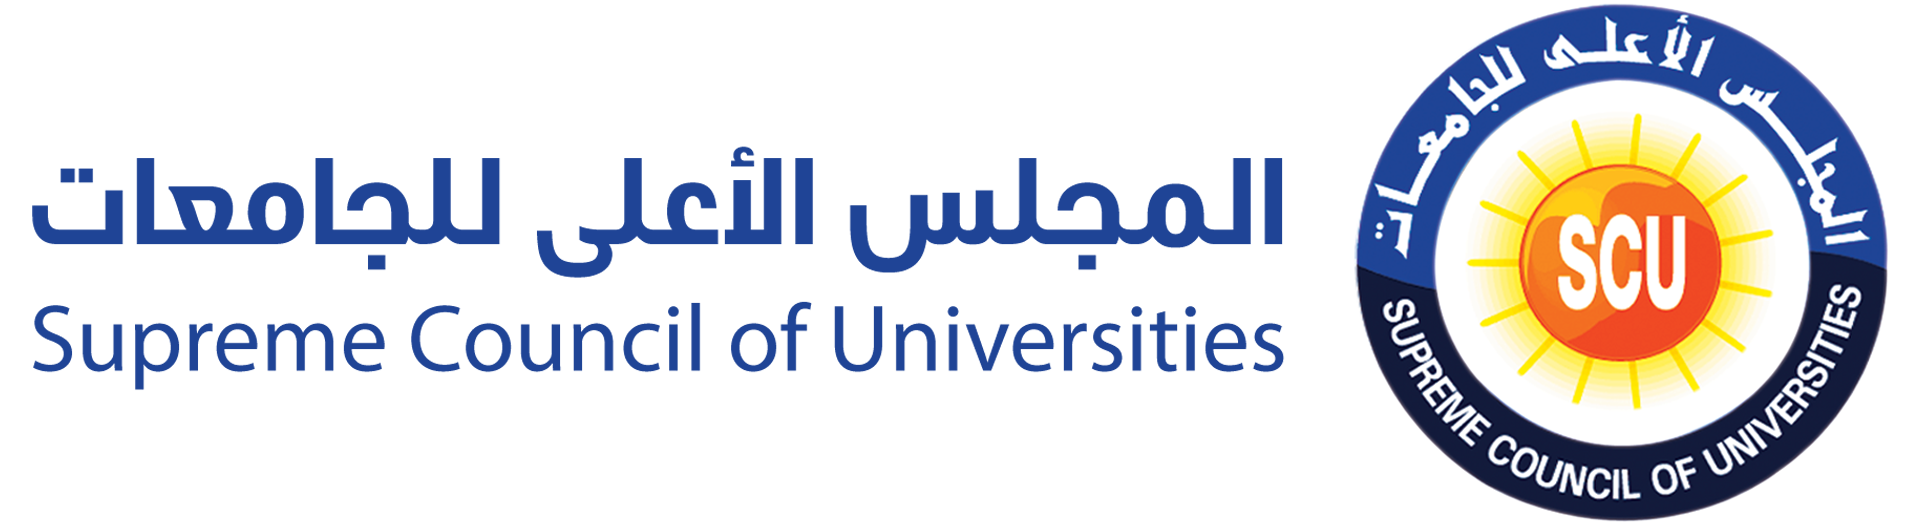 SCU – المجلس الأعلي للجامعات